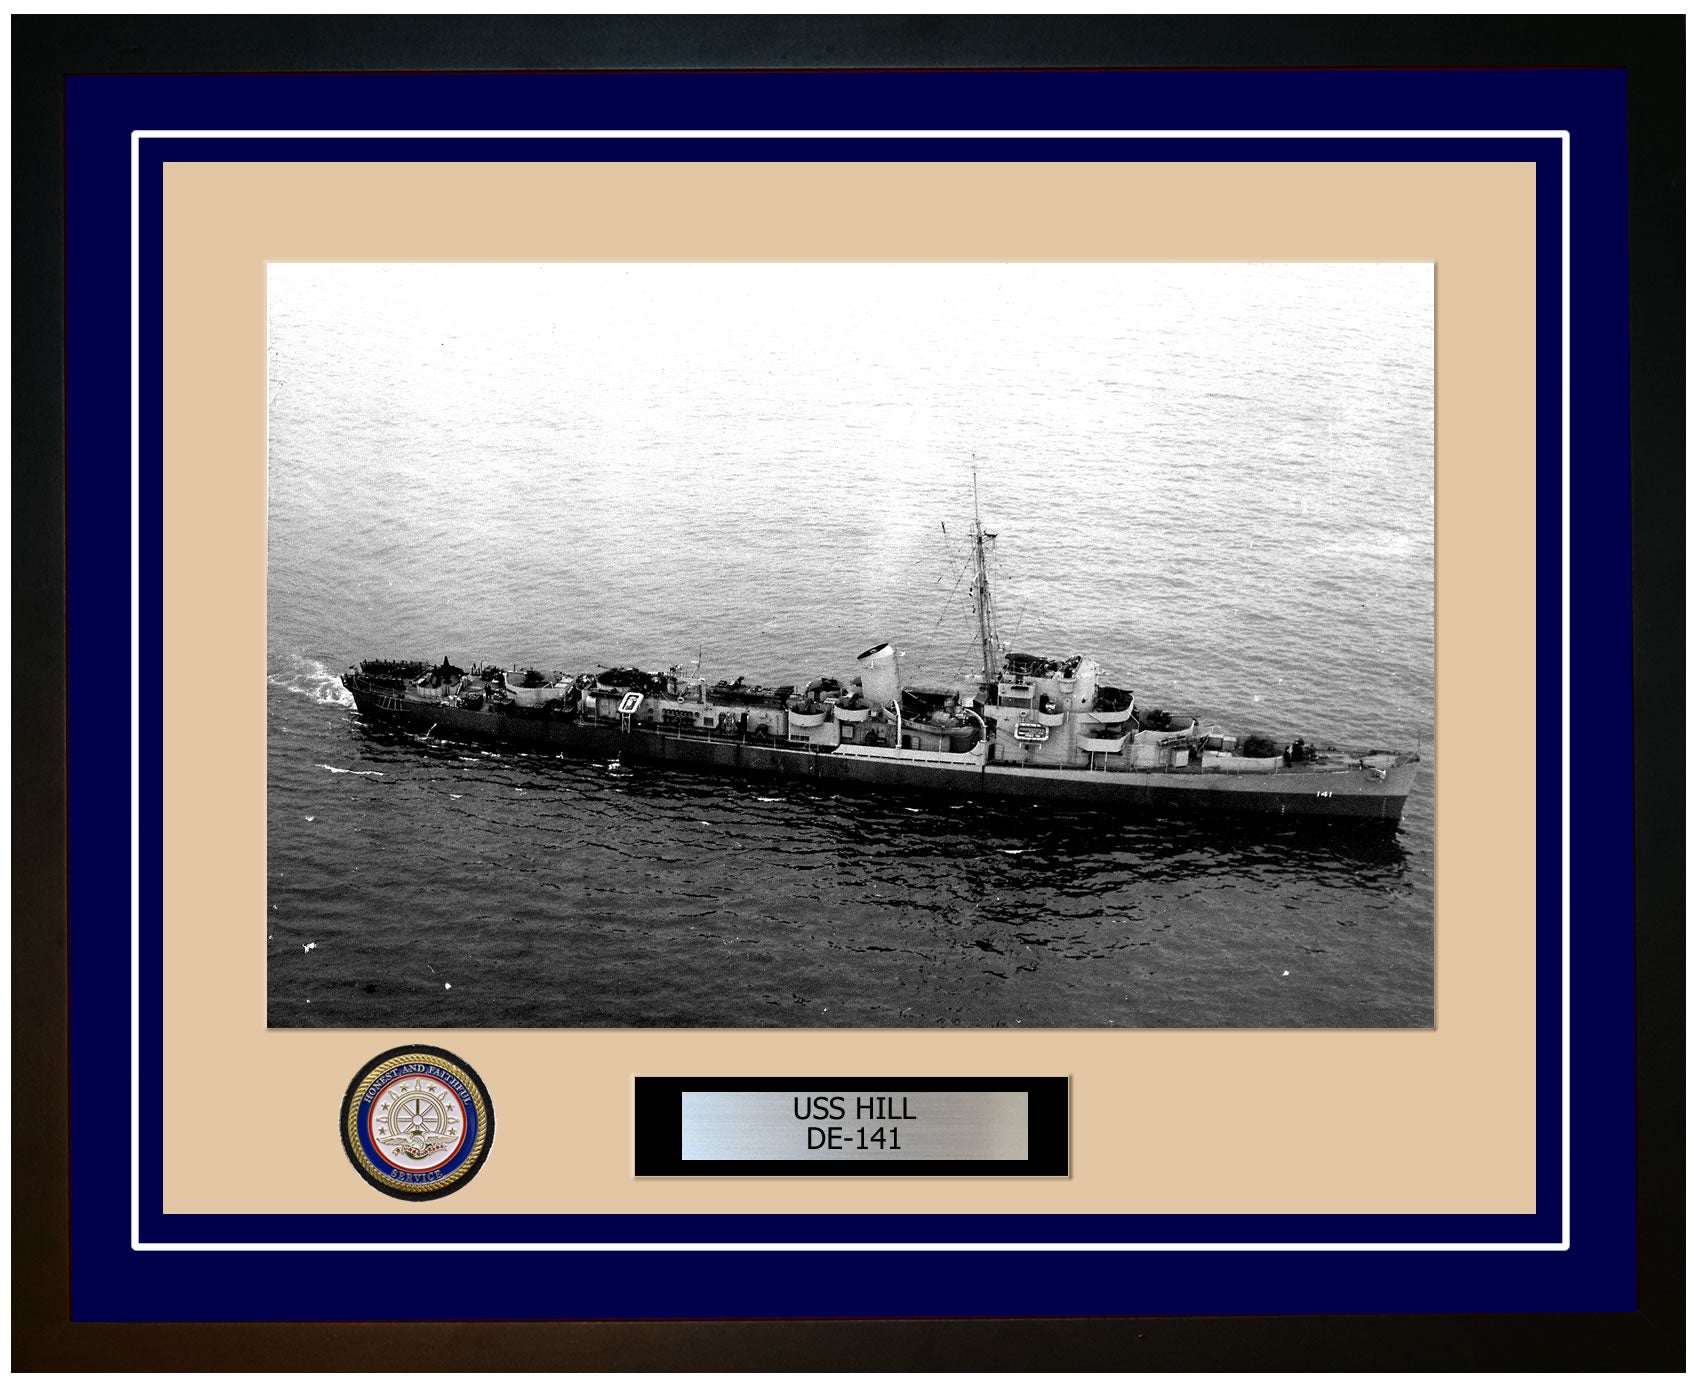 USS Hill DE-141 Framed Navy Ship Photo Blue